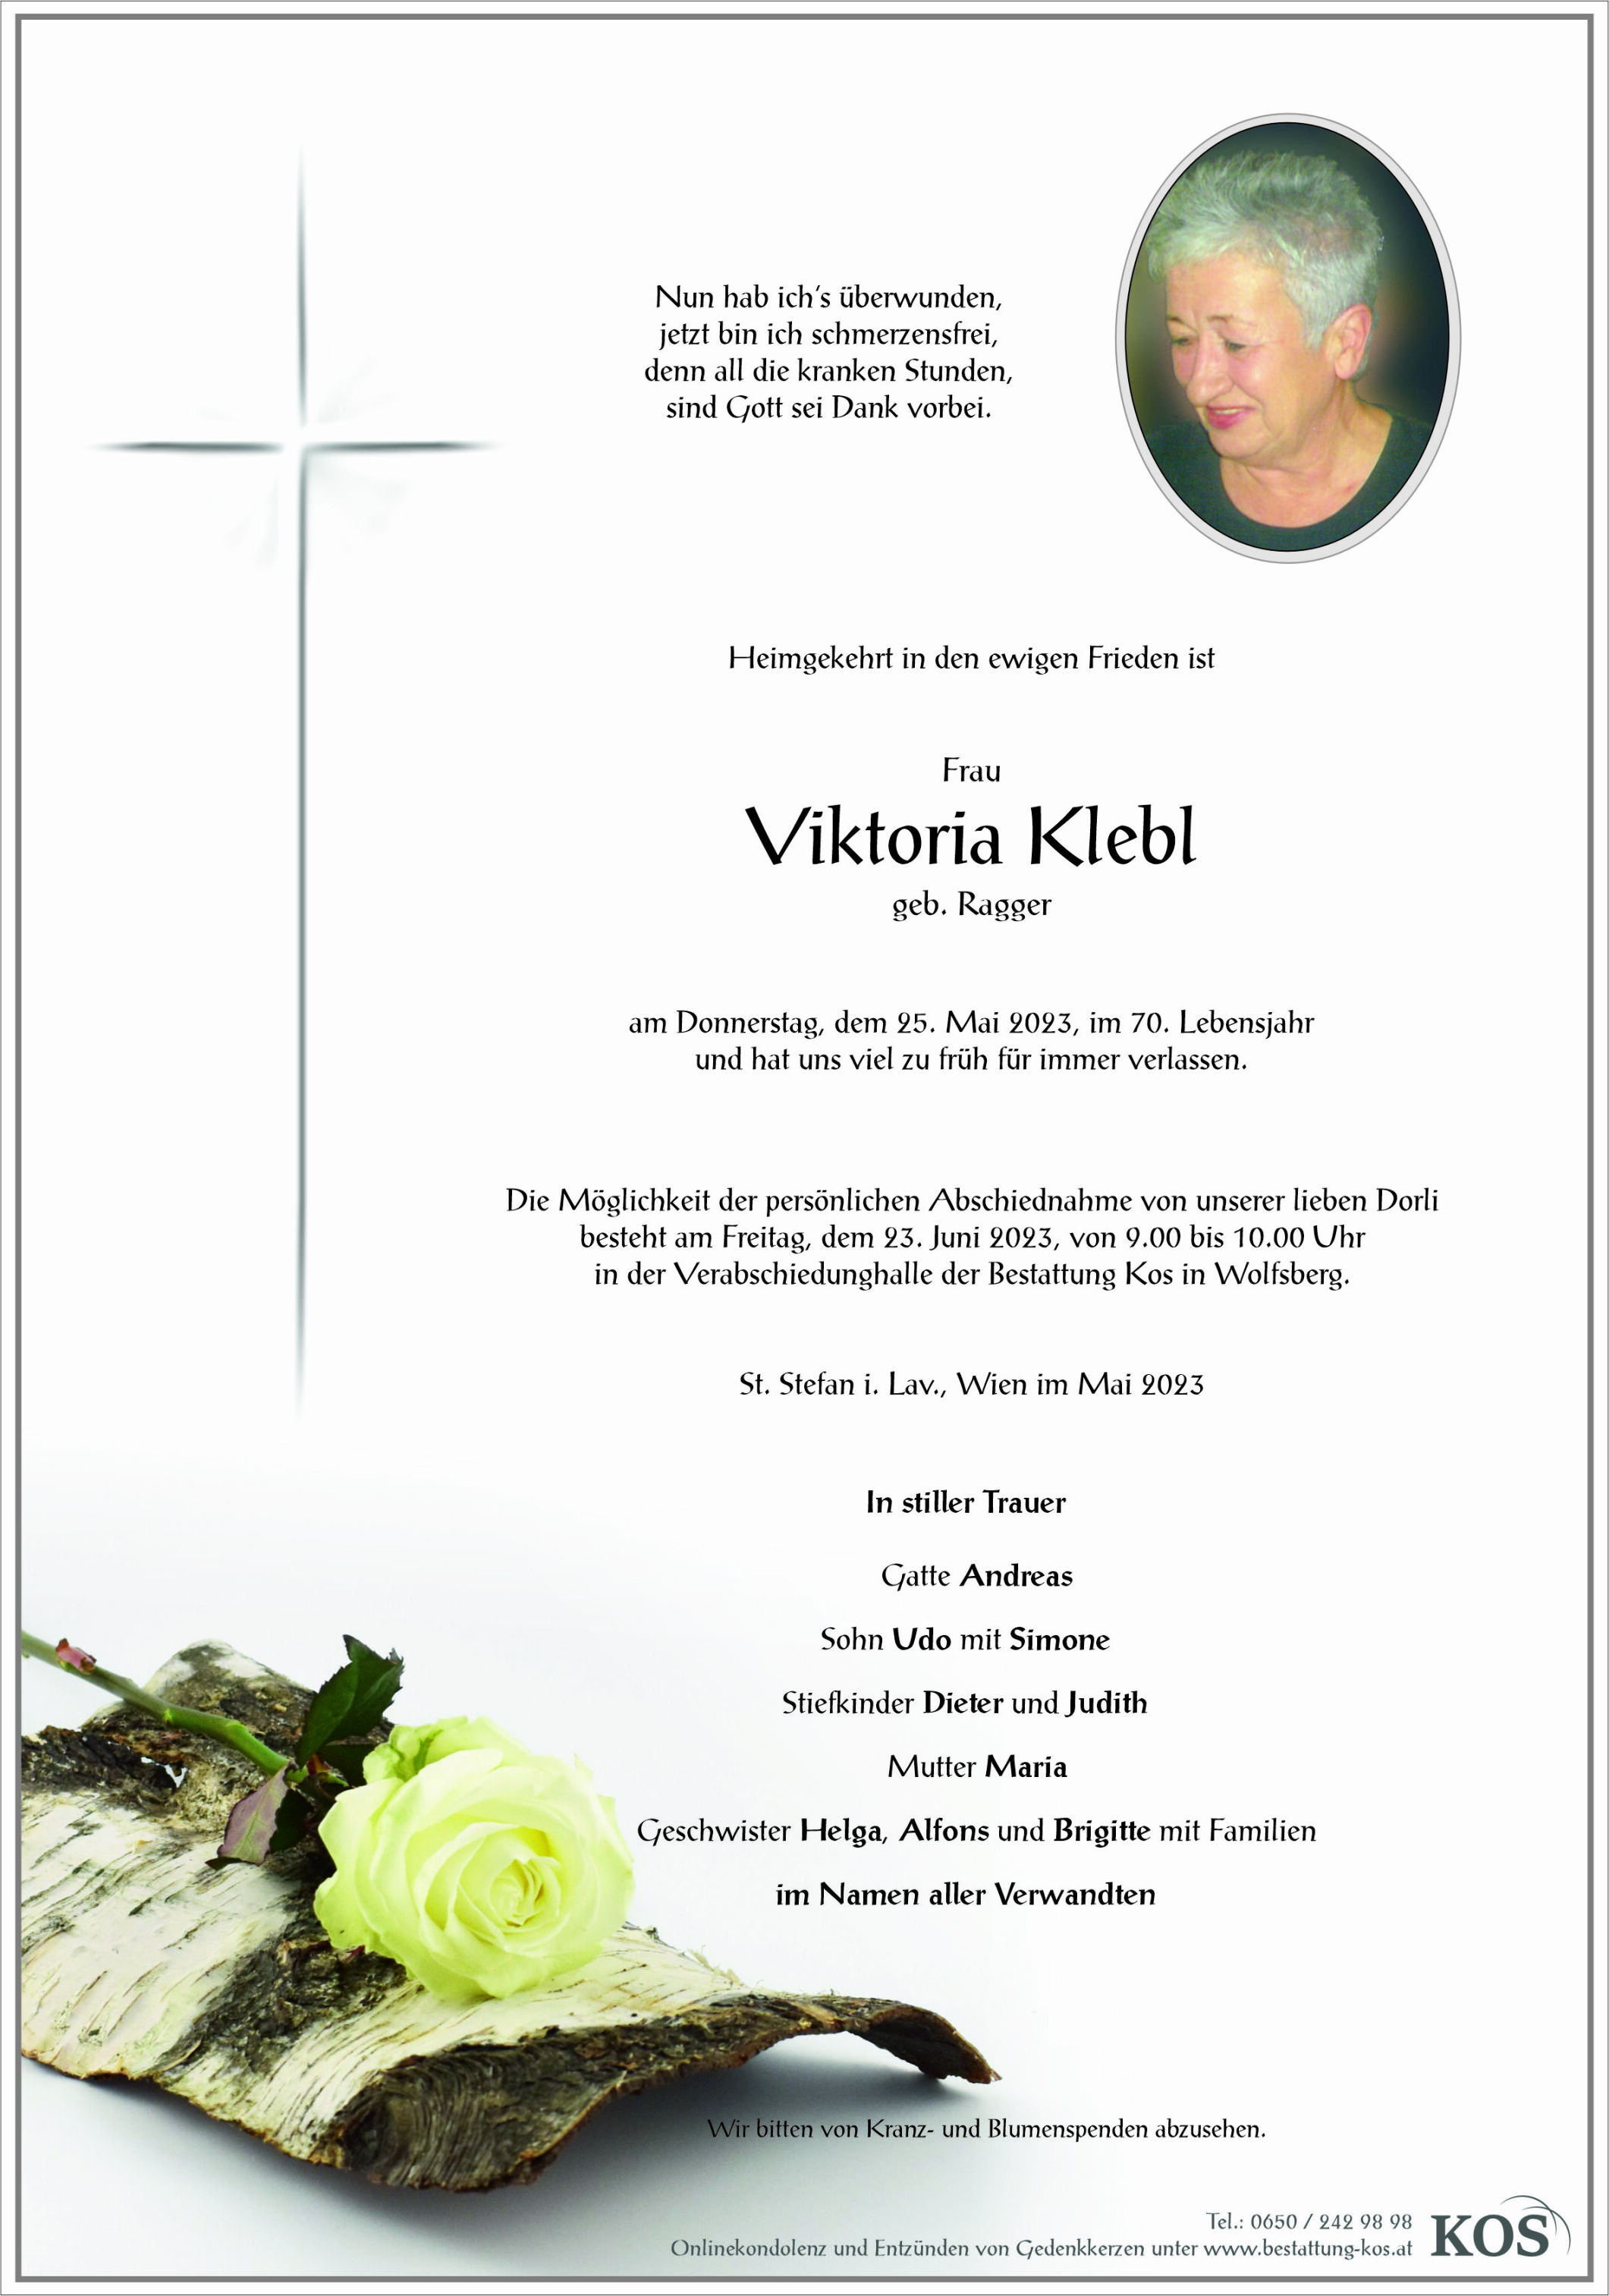 Viktoria Klebl